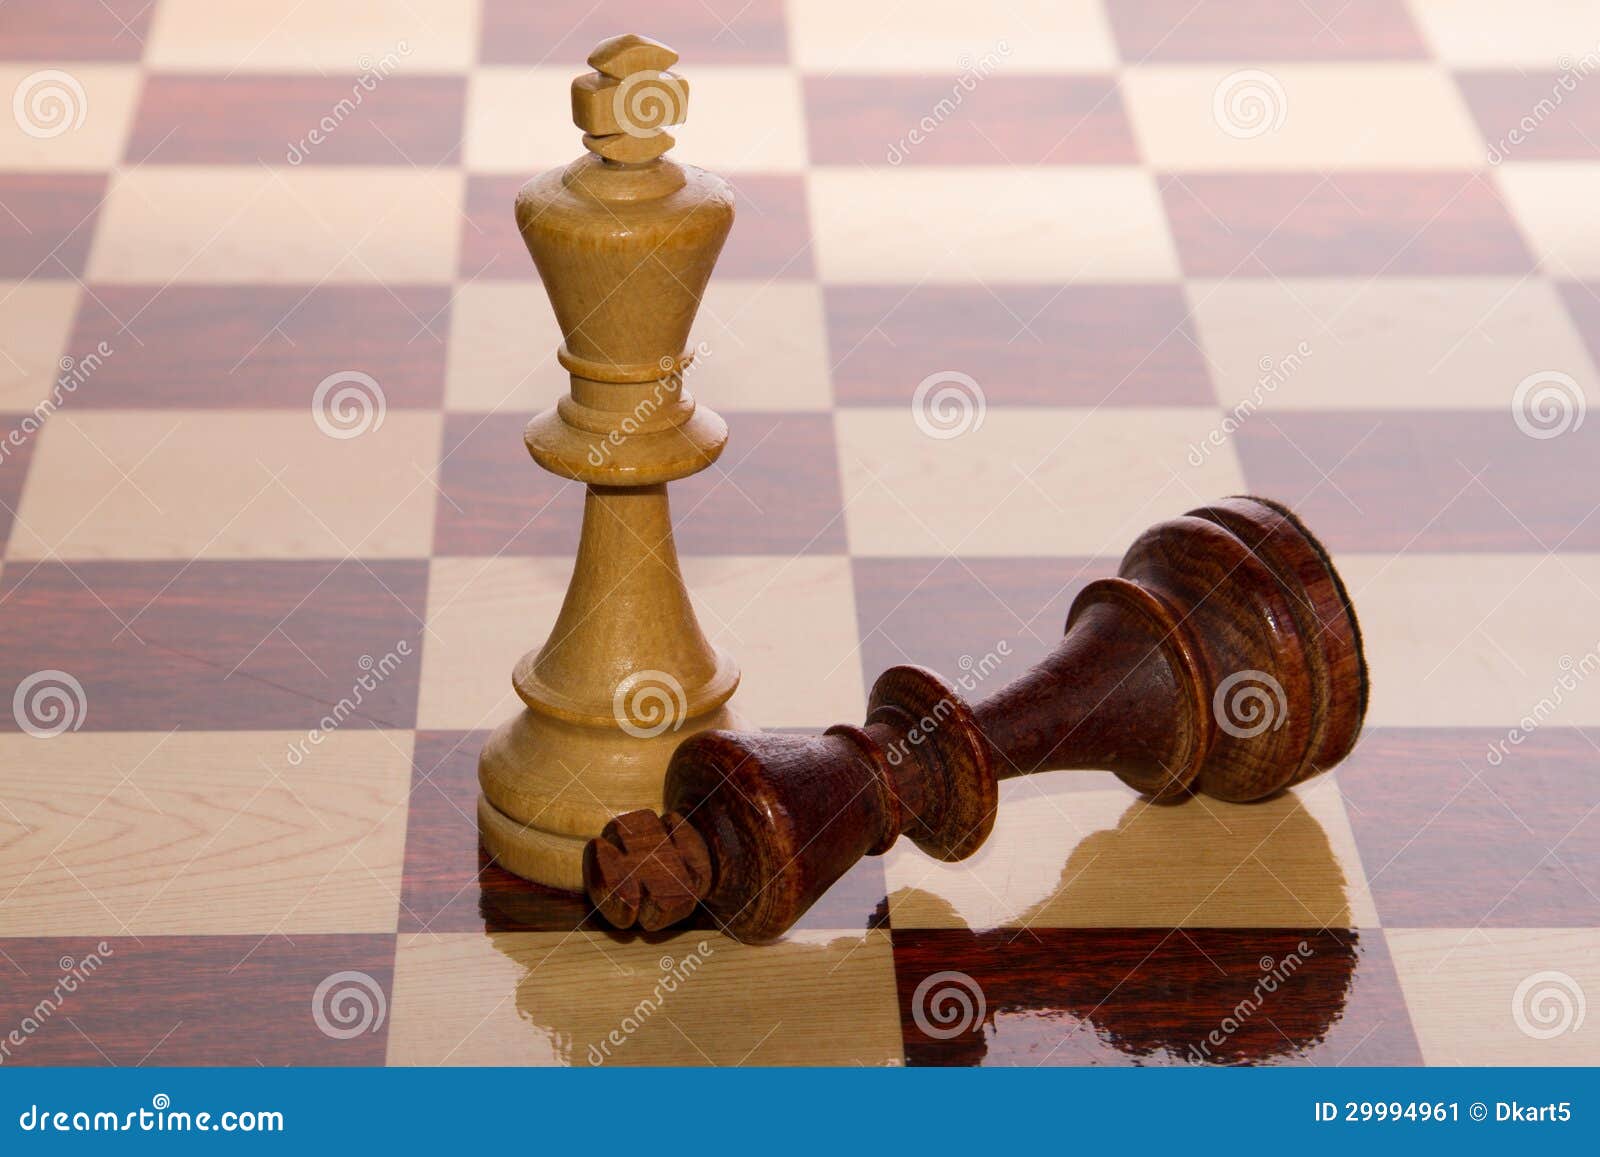 Foto de Checkmate Mão Faz Final Ganhando Movimento No Jogo De